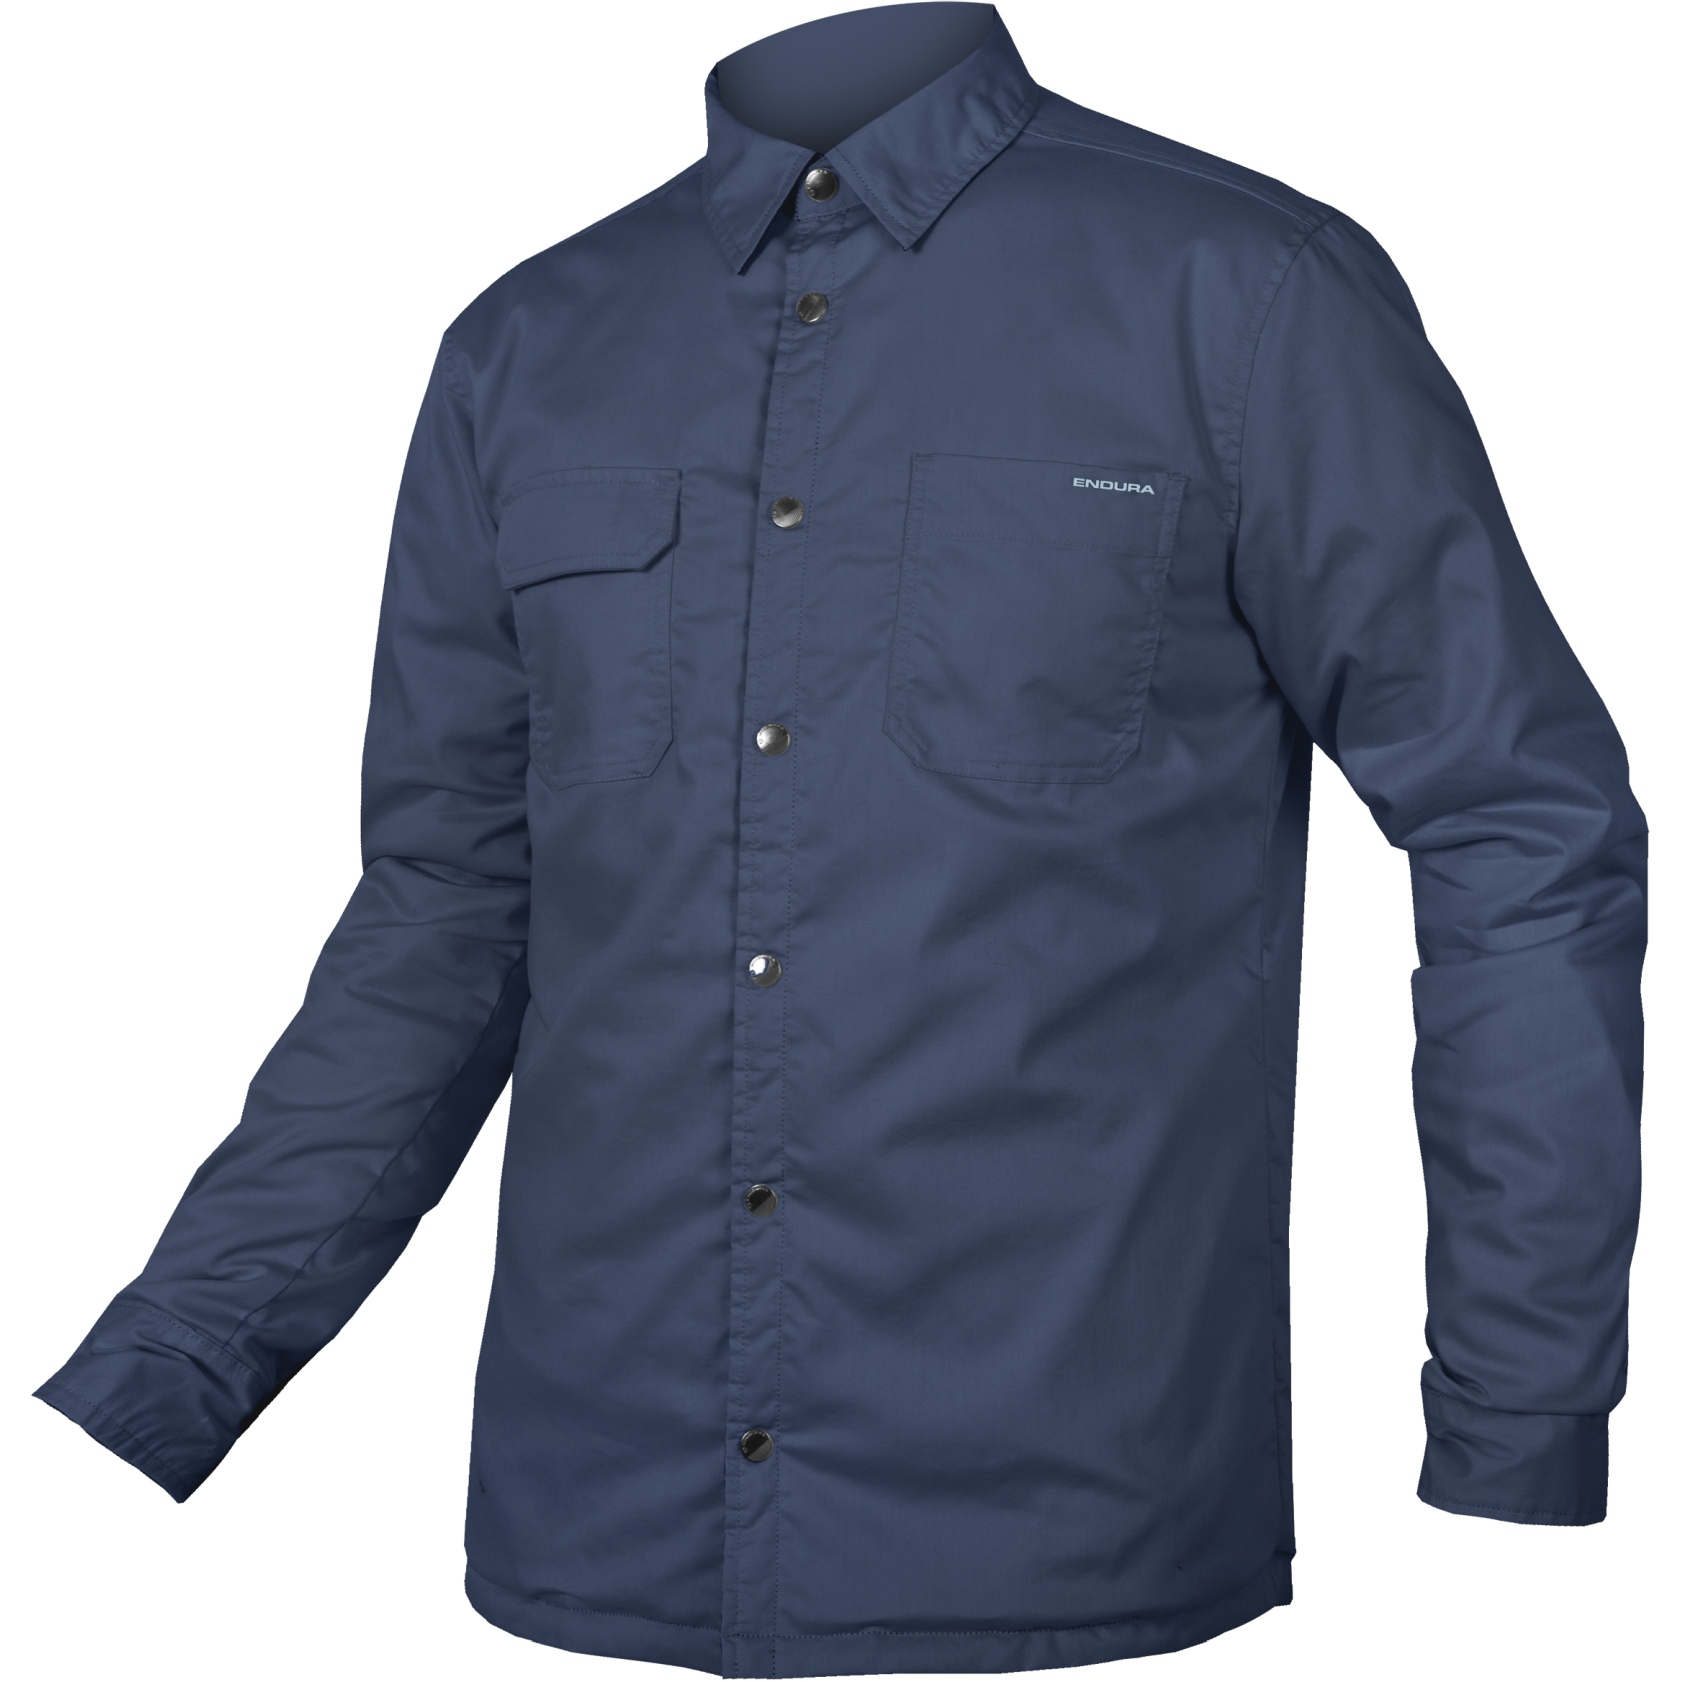 Produktbild von Endura Hummvee Shacket Jacke Herren - ink blue